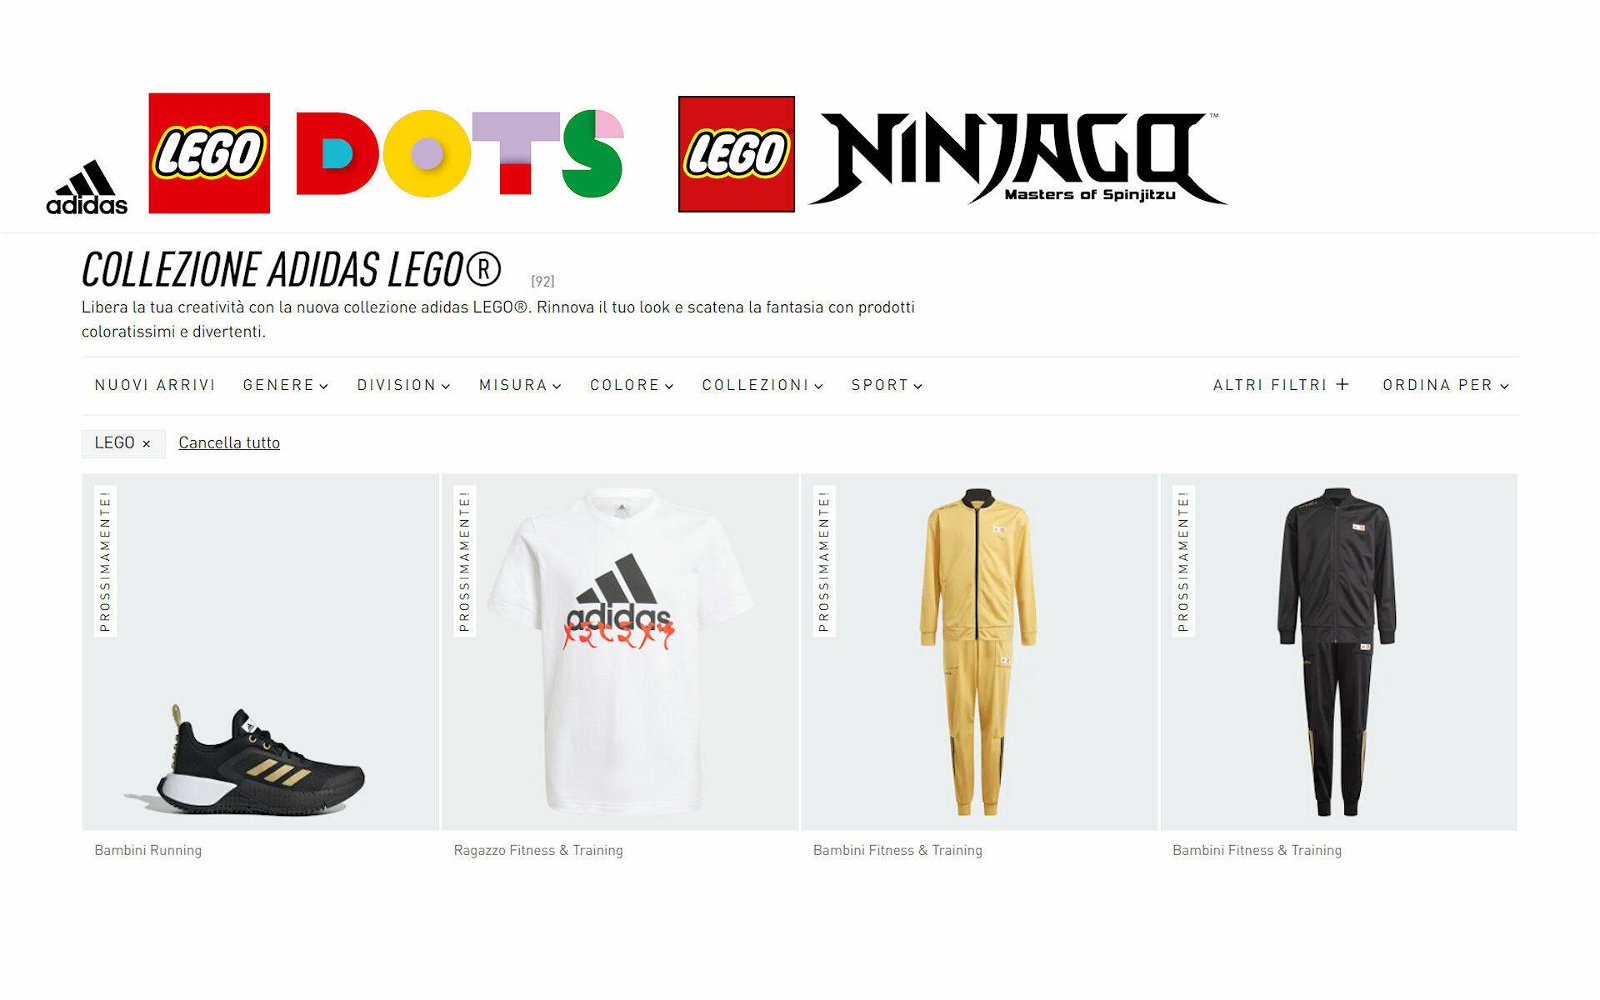 Immagine di LEGO e Adidas: la collezione cresce con i capi DOTS e NINJAGO